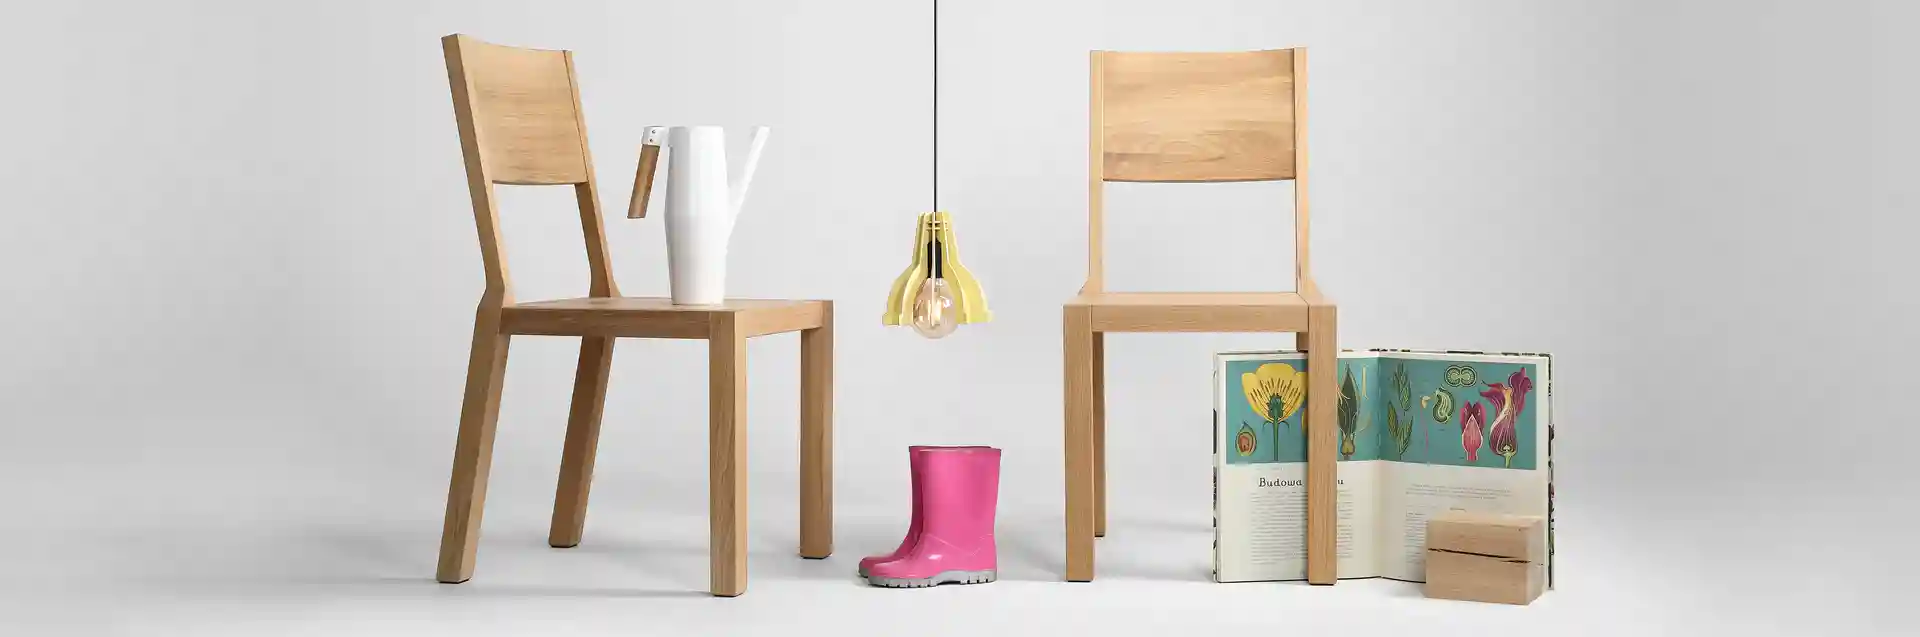 Krzesło z drewna dębowego MILONI BLOX, Kolor: 03: Natural, Wymiary: Dł: 45 x Sz: 44 x Wys: 45 cm, polskie krzesła z drewna, drewniane krzesło, dębowe krzesła